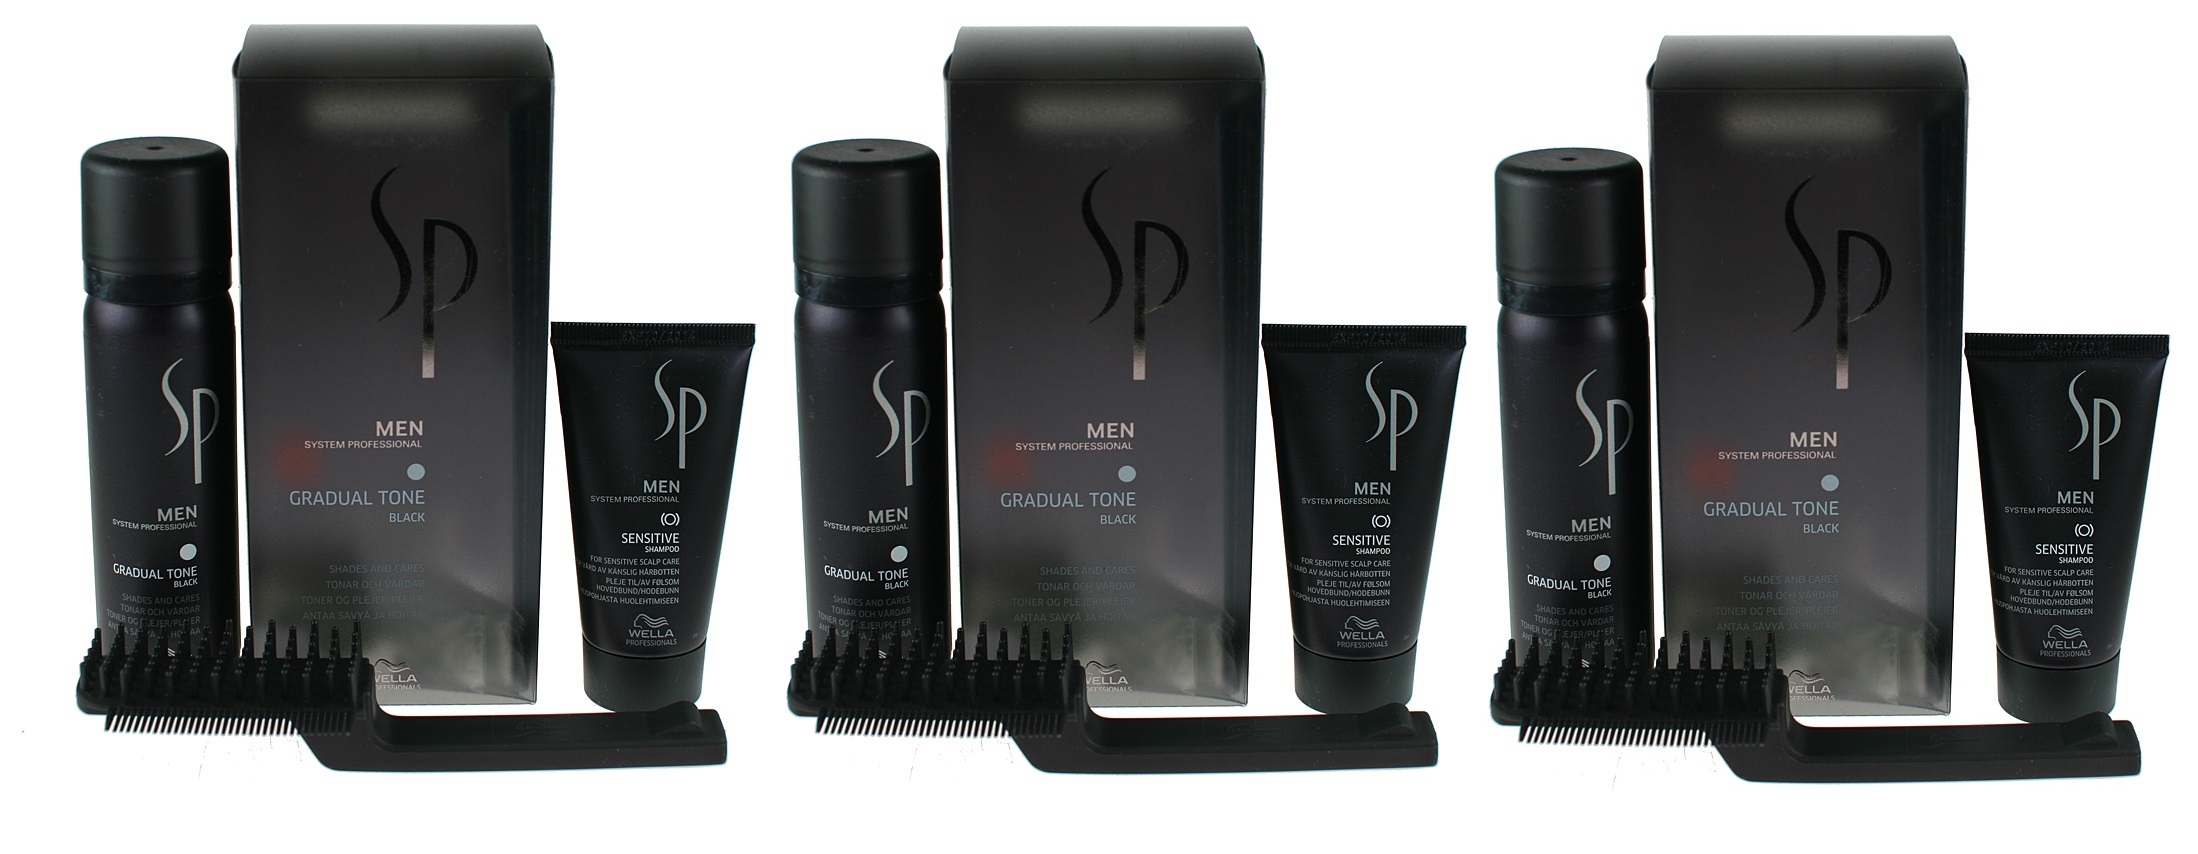 SP Men Gradual Tone Black | Zestaw maskujący siwiznę włosów dla mężczyzn (kolor czarny): pianka pigmentująca 60ml + szampon 30ml + szczotka x3